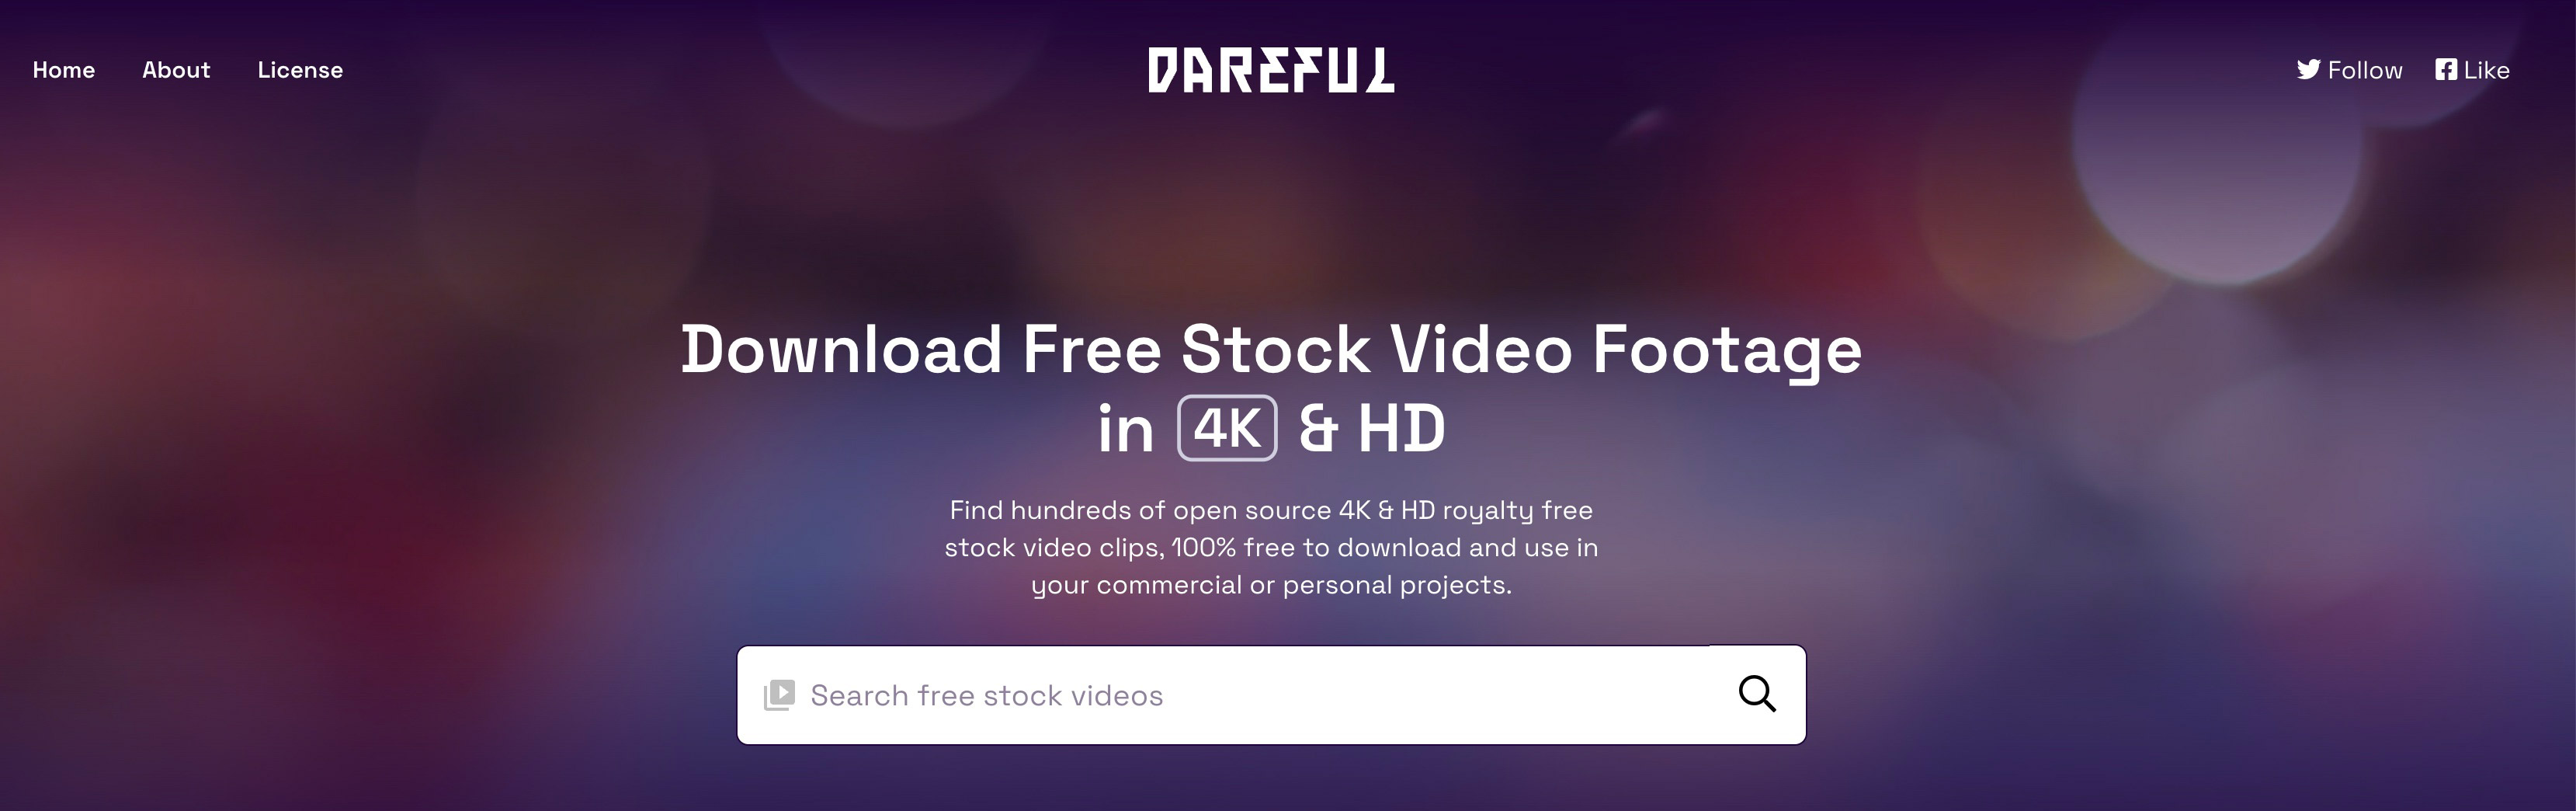 Plateforme vidéos libres de droits Dareful